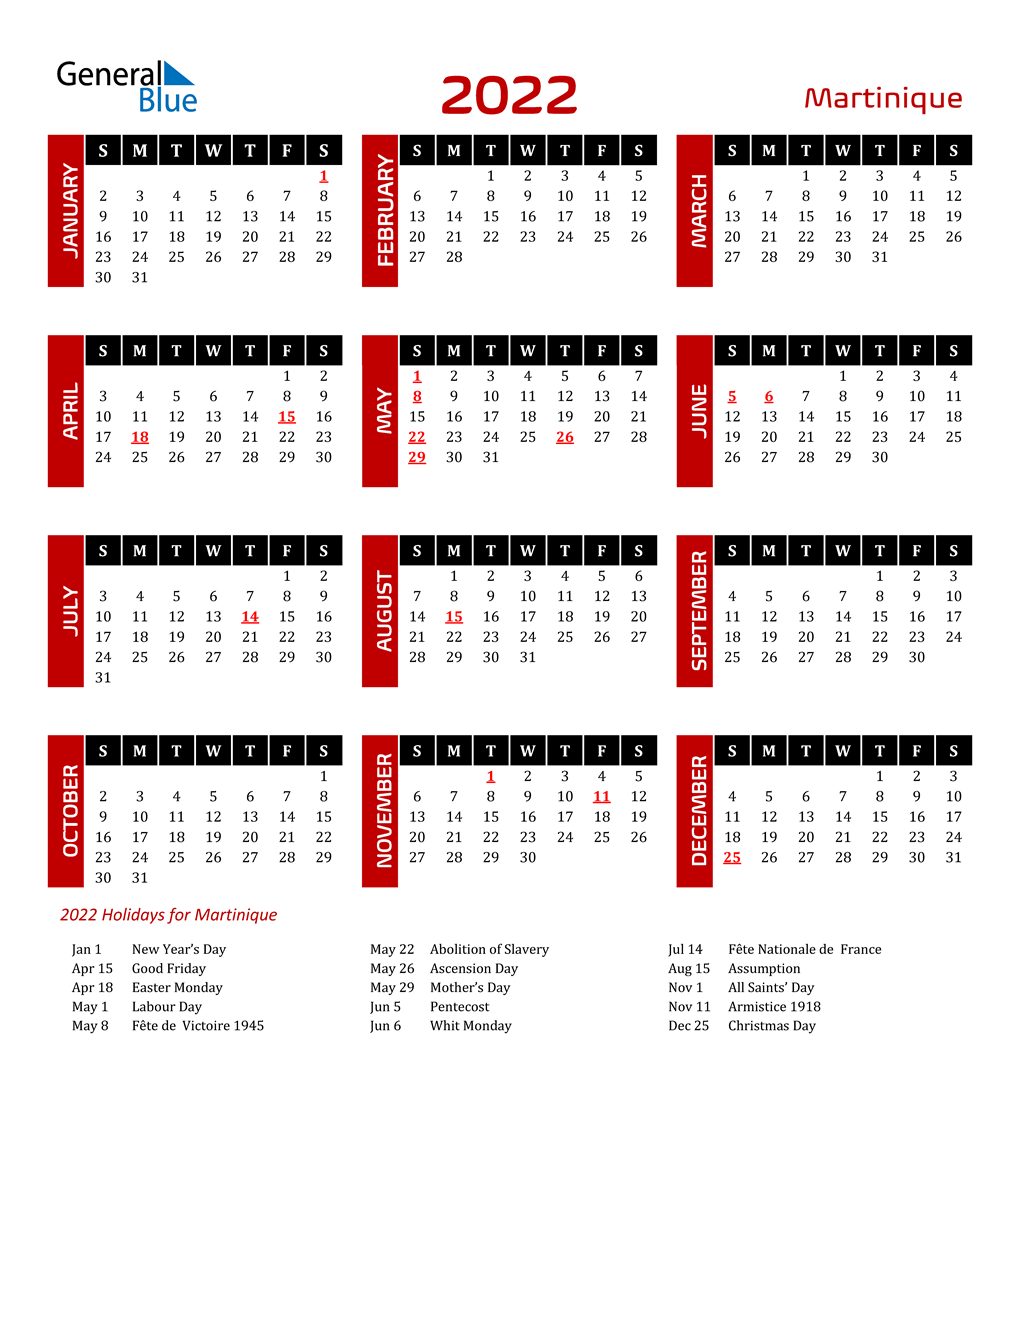 2022 martinique calendar with holidays